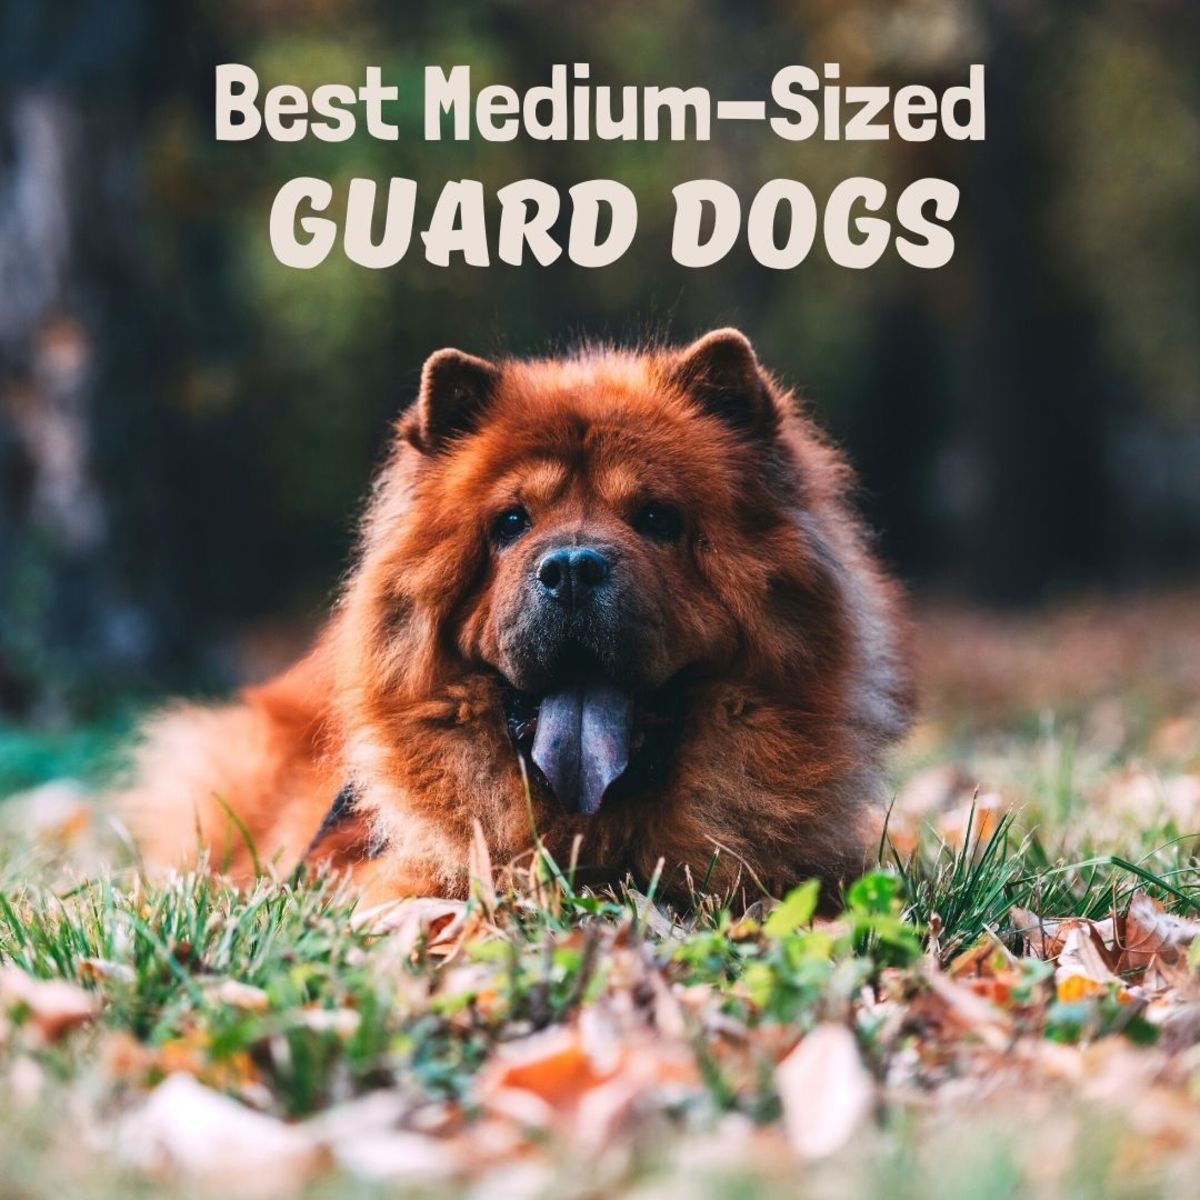 Many medium-sized dog breeds make good guard dogs.